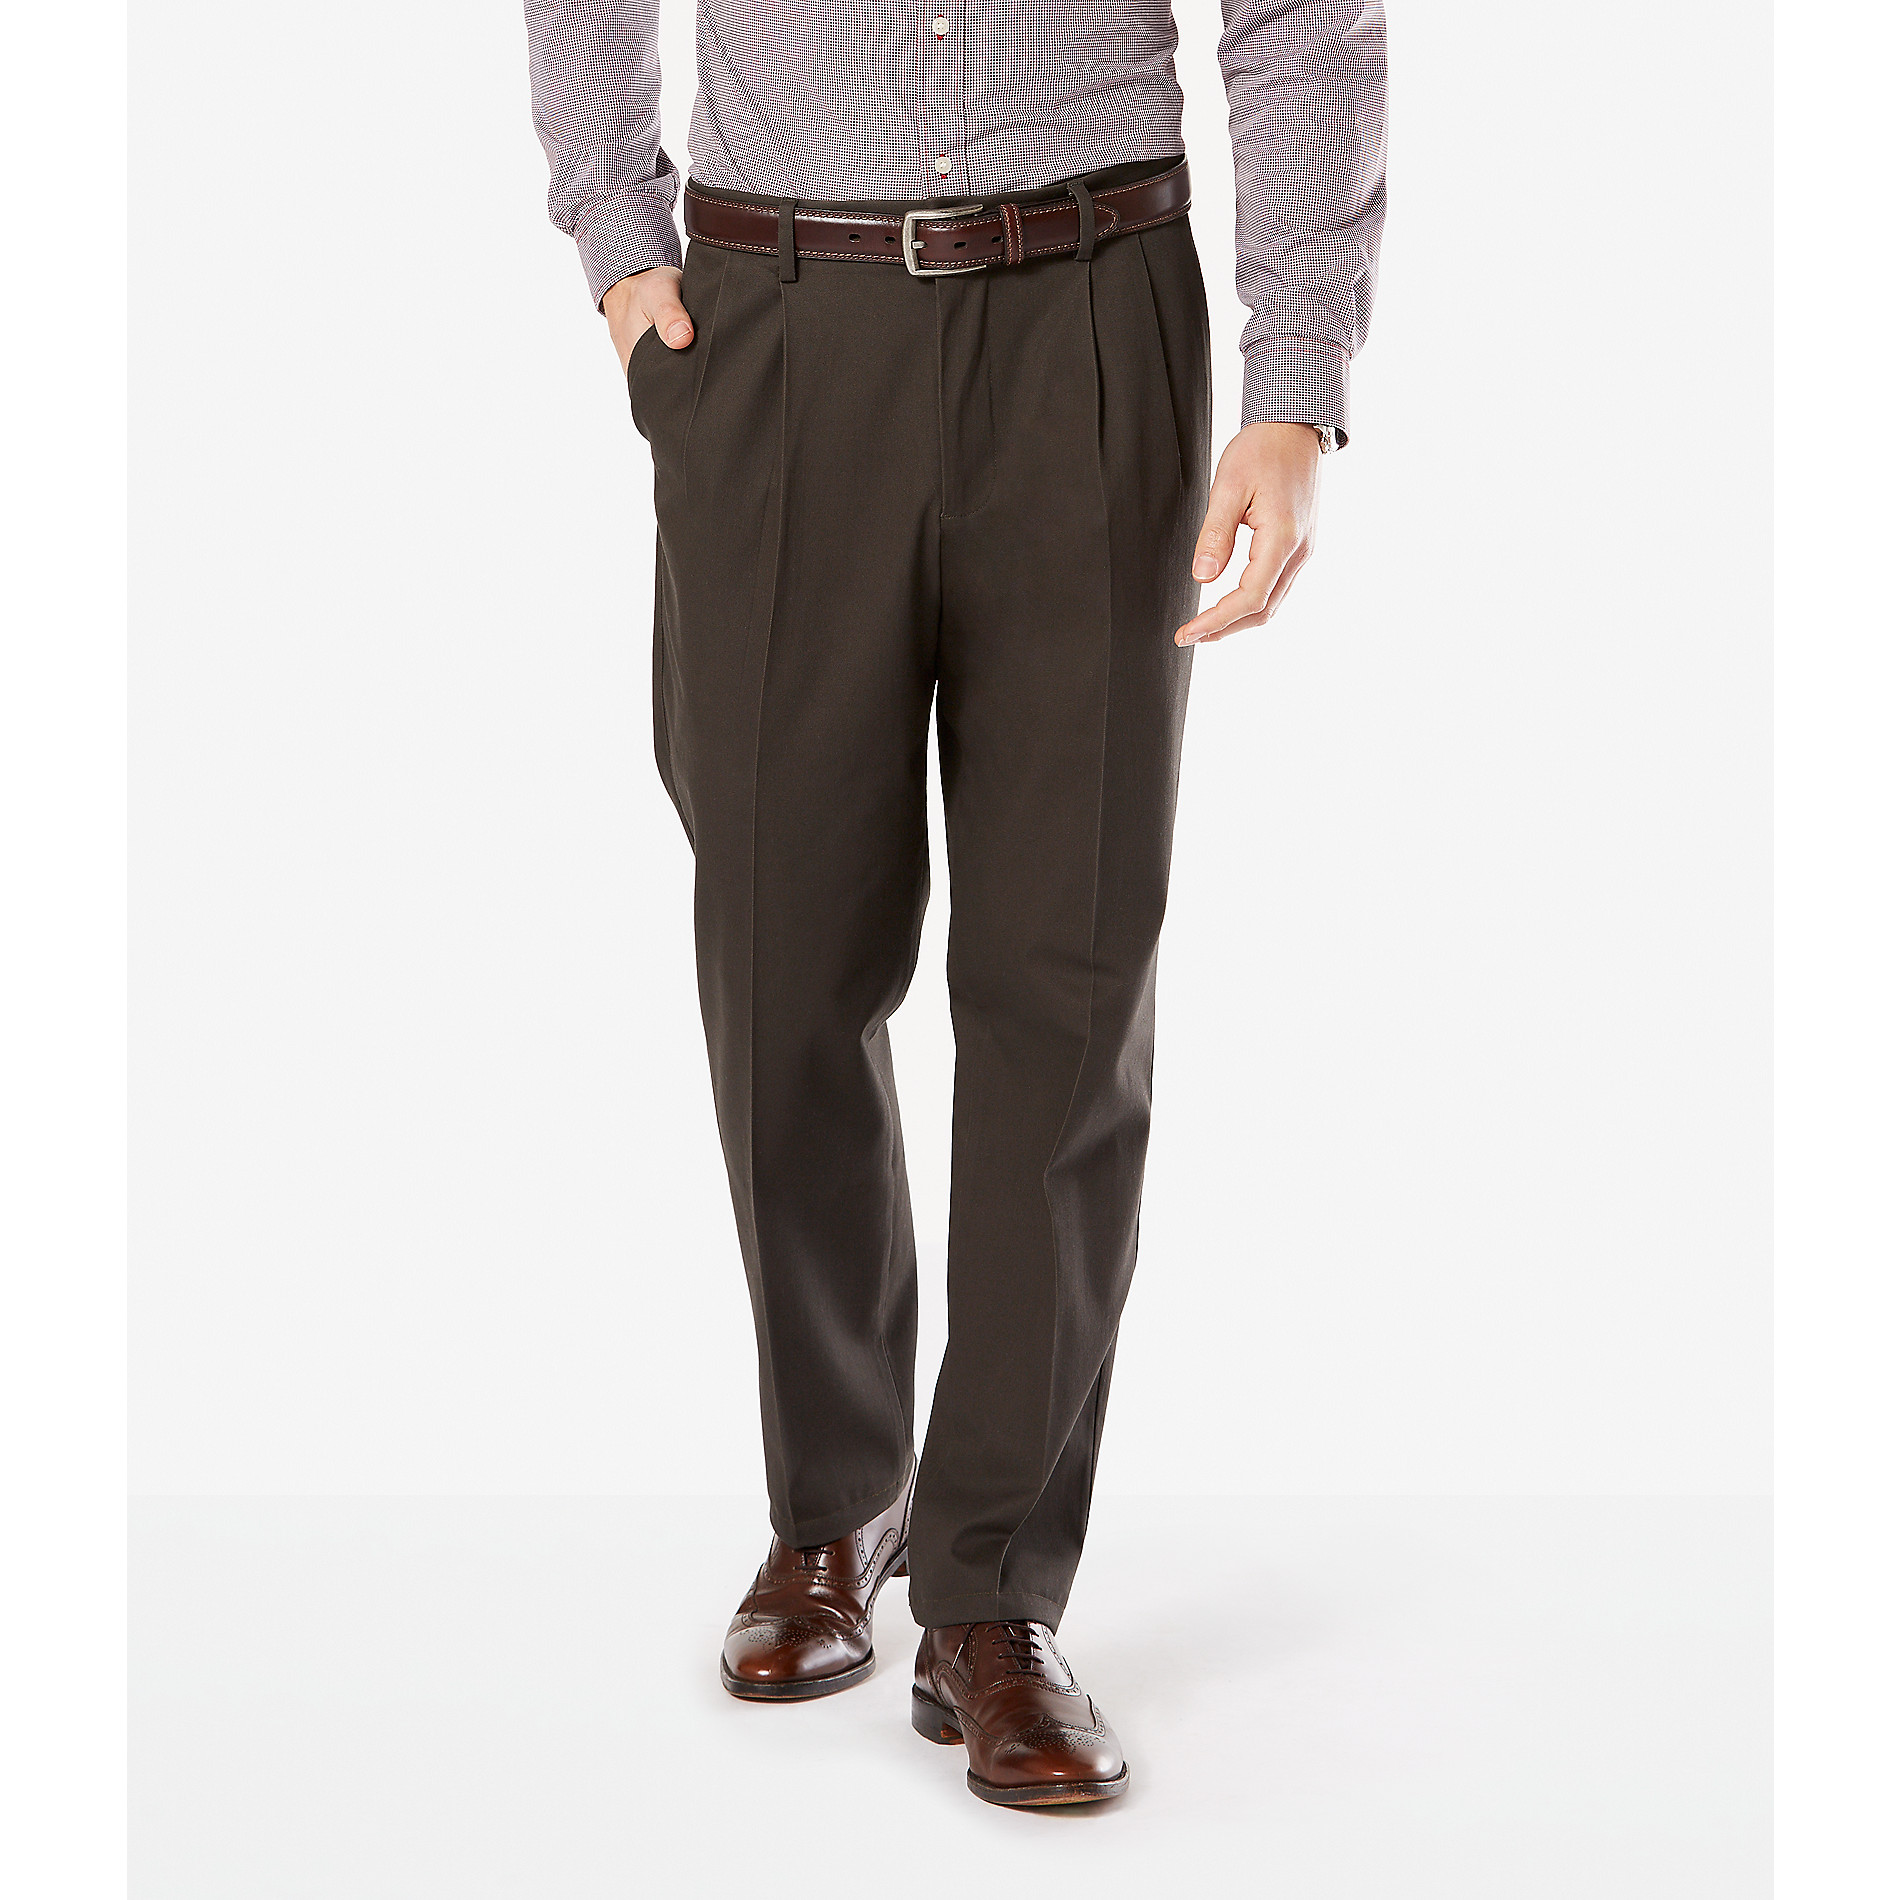 Dockers Men's Classic Fit Signature Khaki Pants - Pleated D3 | Shop ...